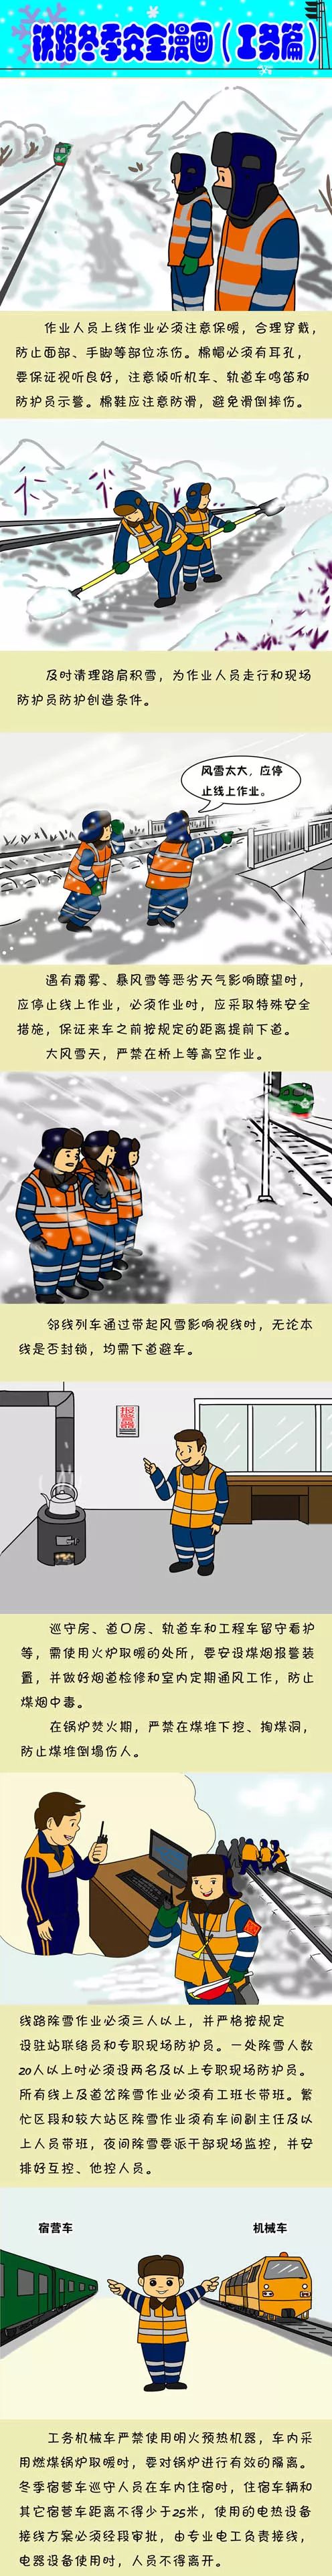 铁路工务漫画图片